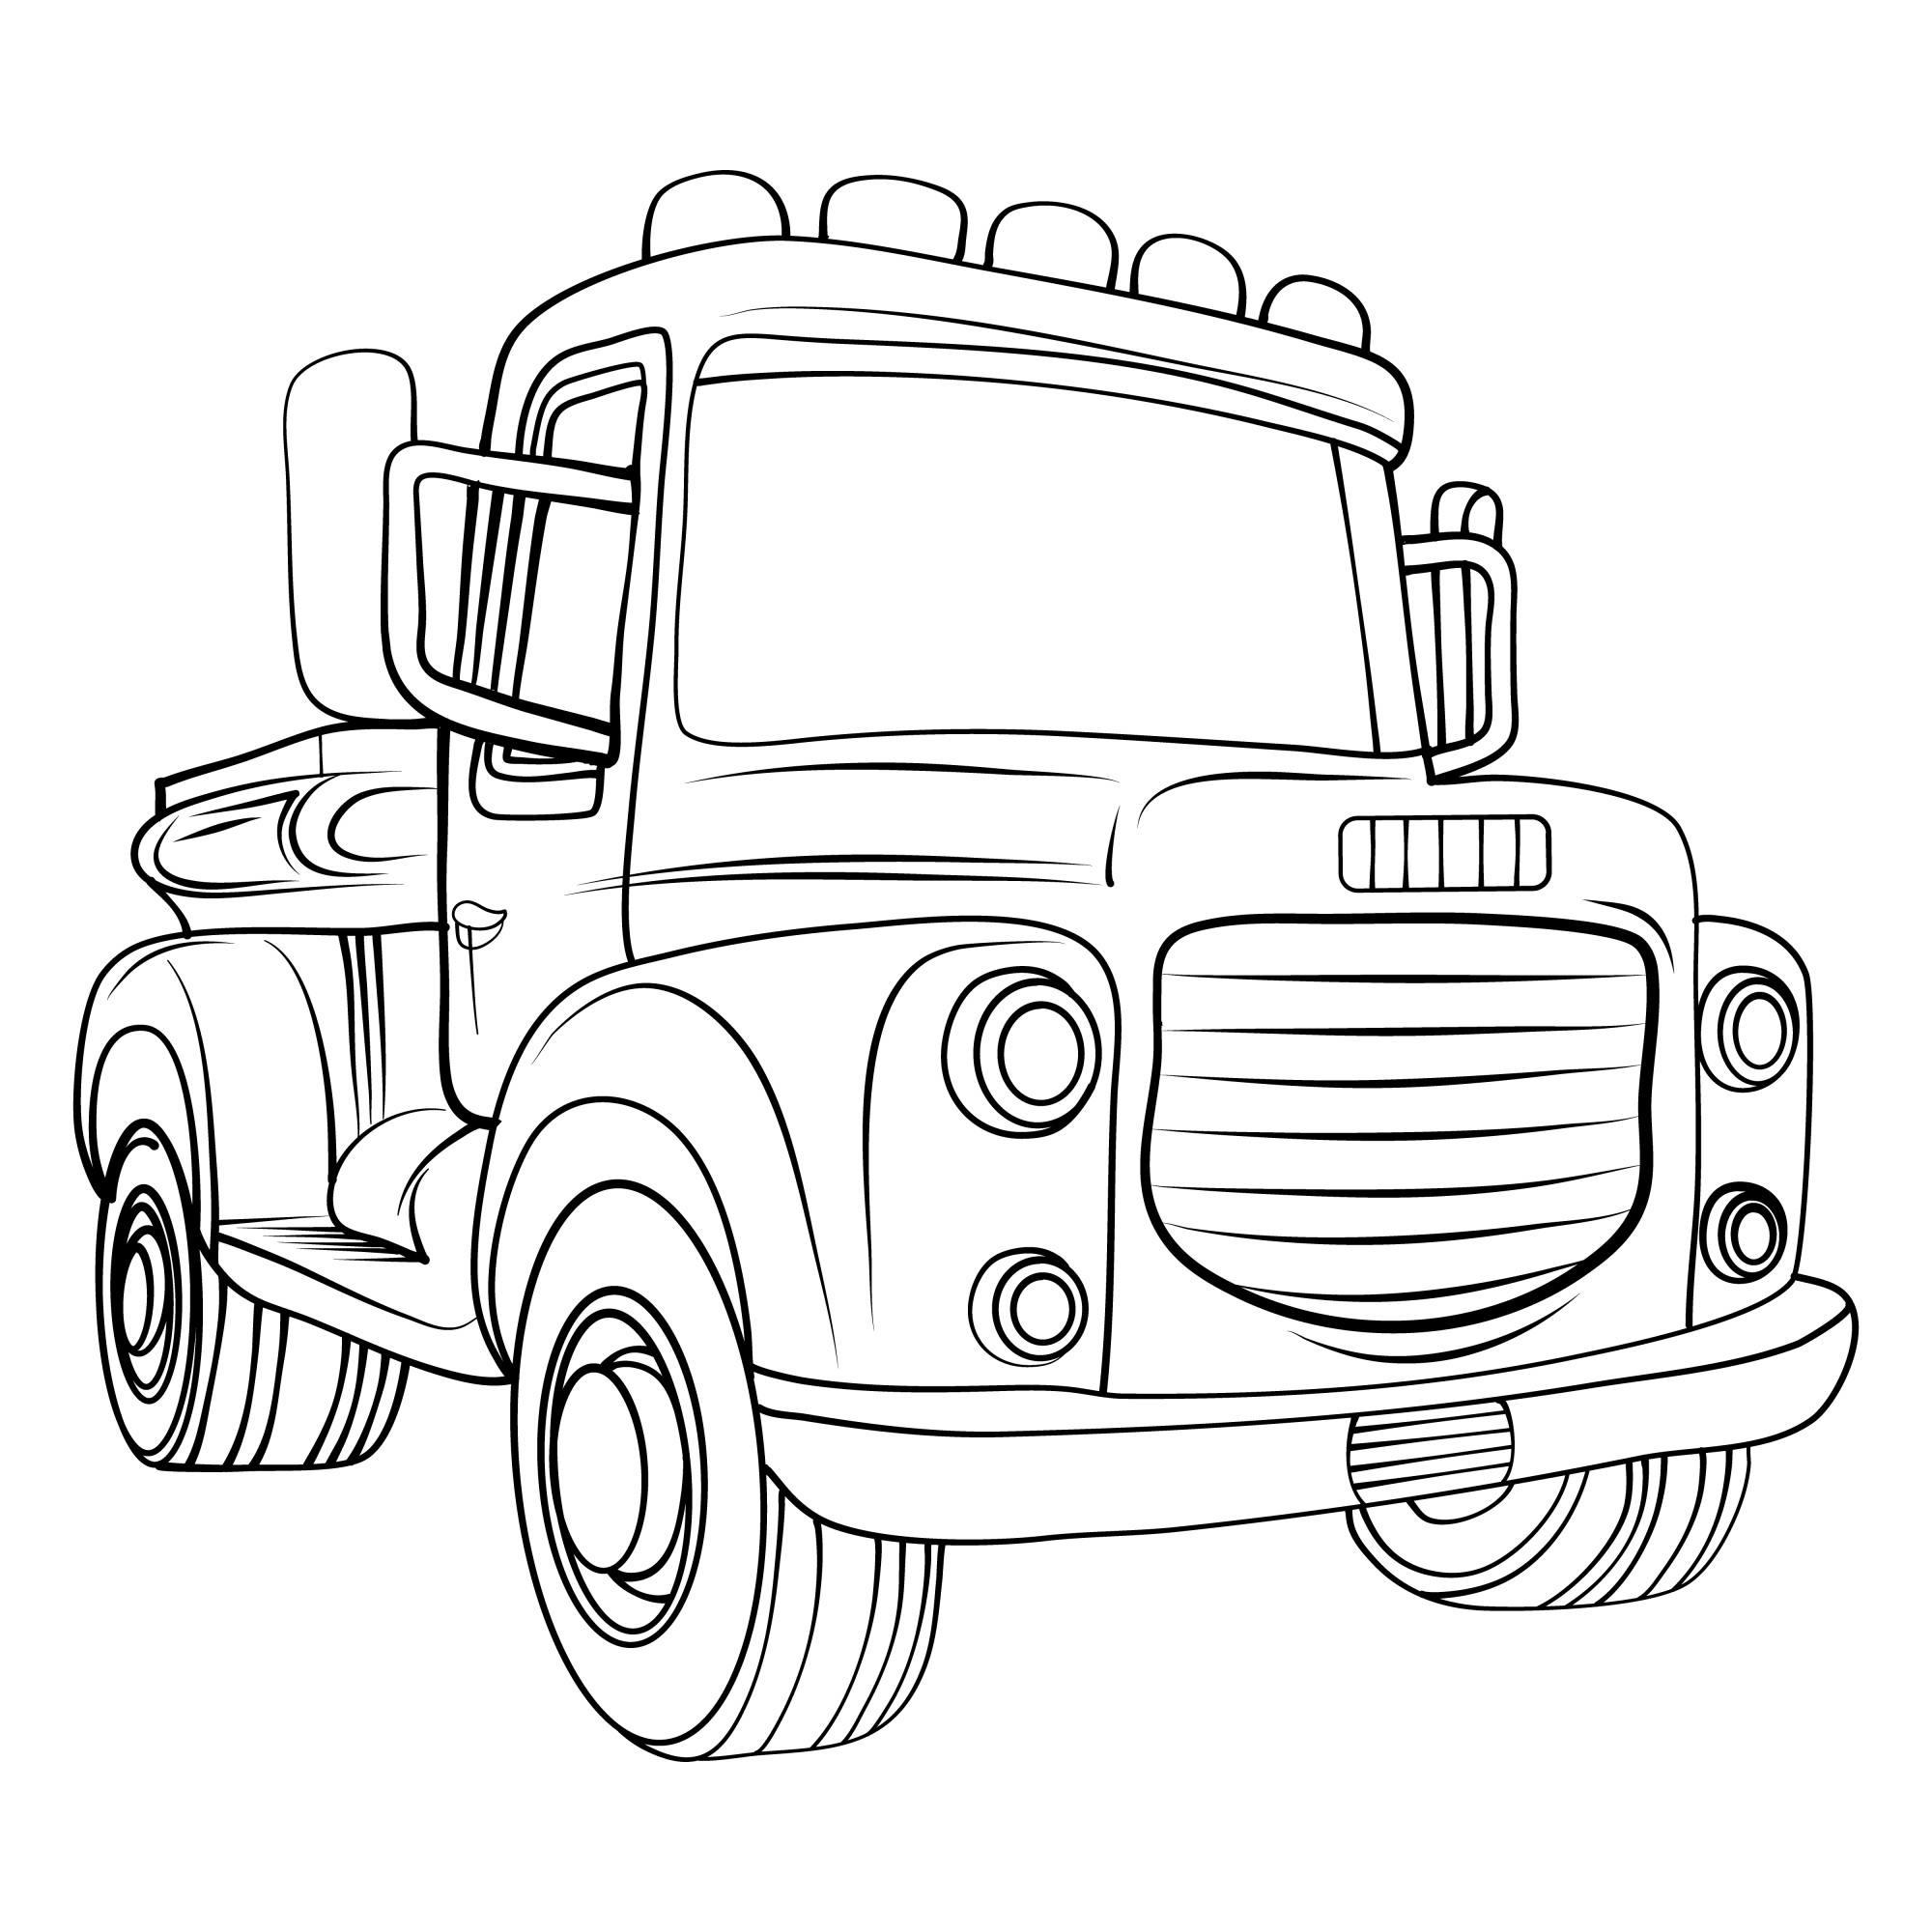 Раскраска для детей: грузовик с мигалками